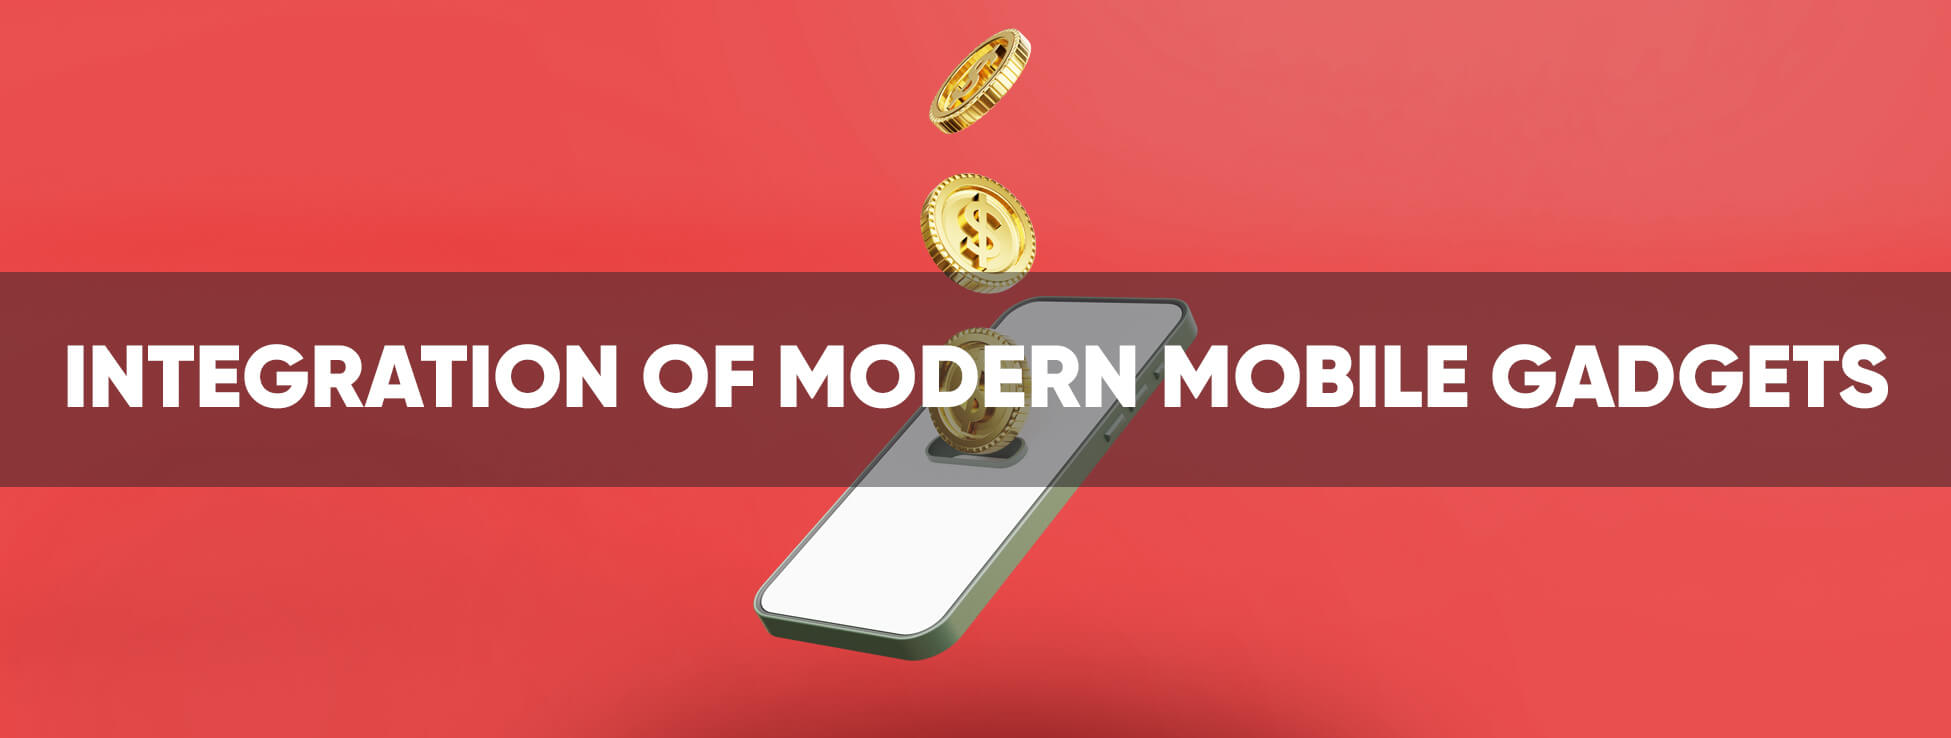 Integration of modern mobile gadgets